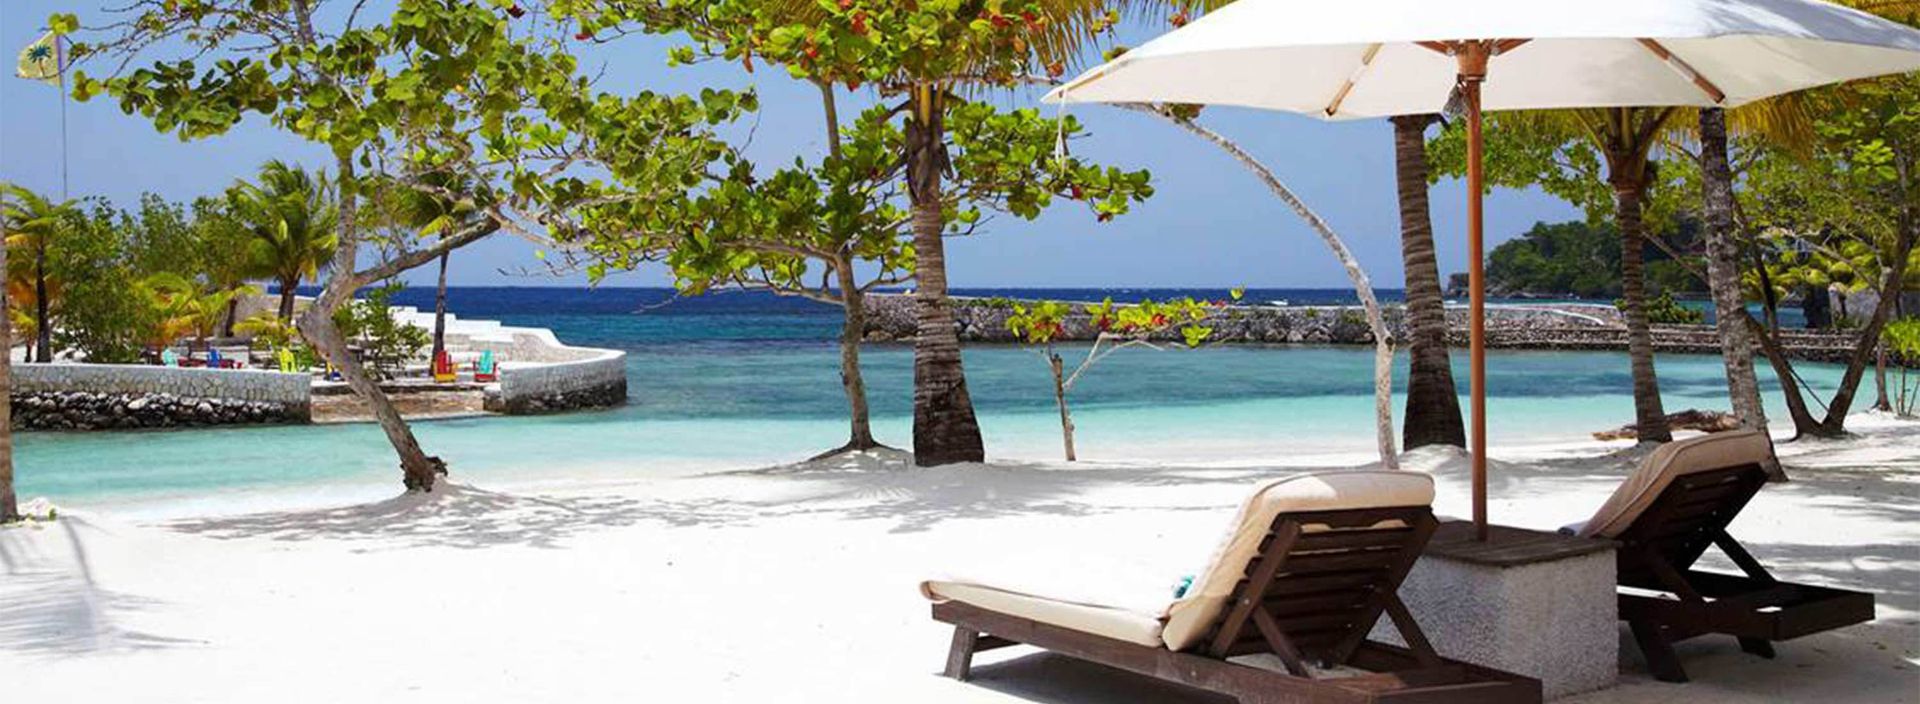 Goldeneye, a luxury retreat in Jamaica